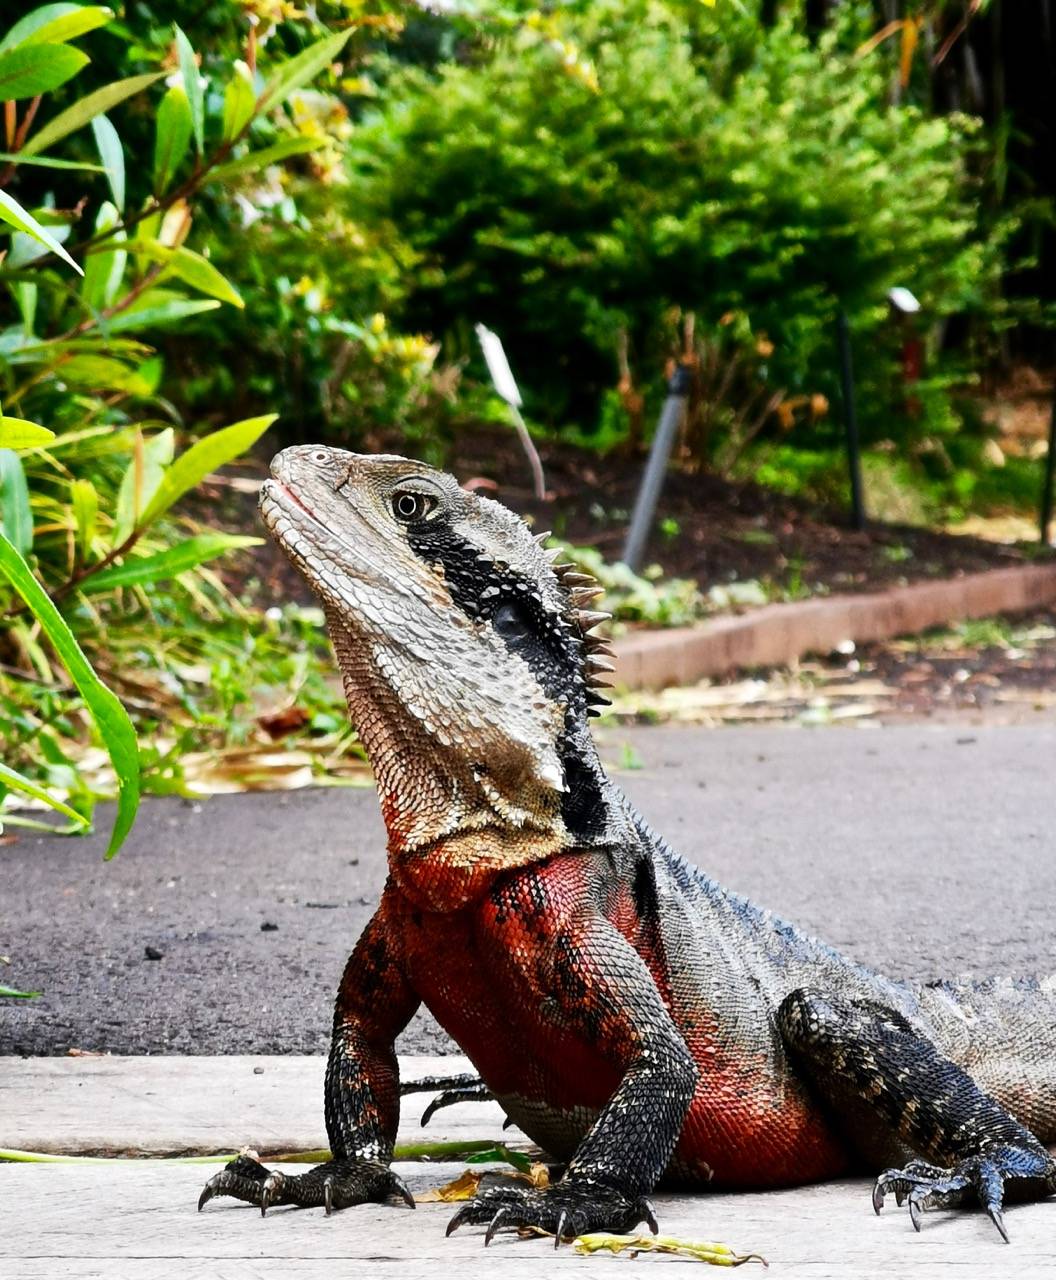 它们喜欢生活在潮湿的丛林里,所以逛公园时经常能见到这种澳洲水蜥蜴